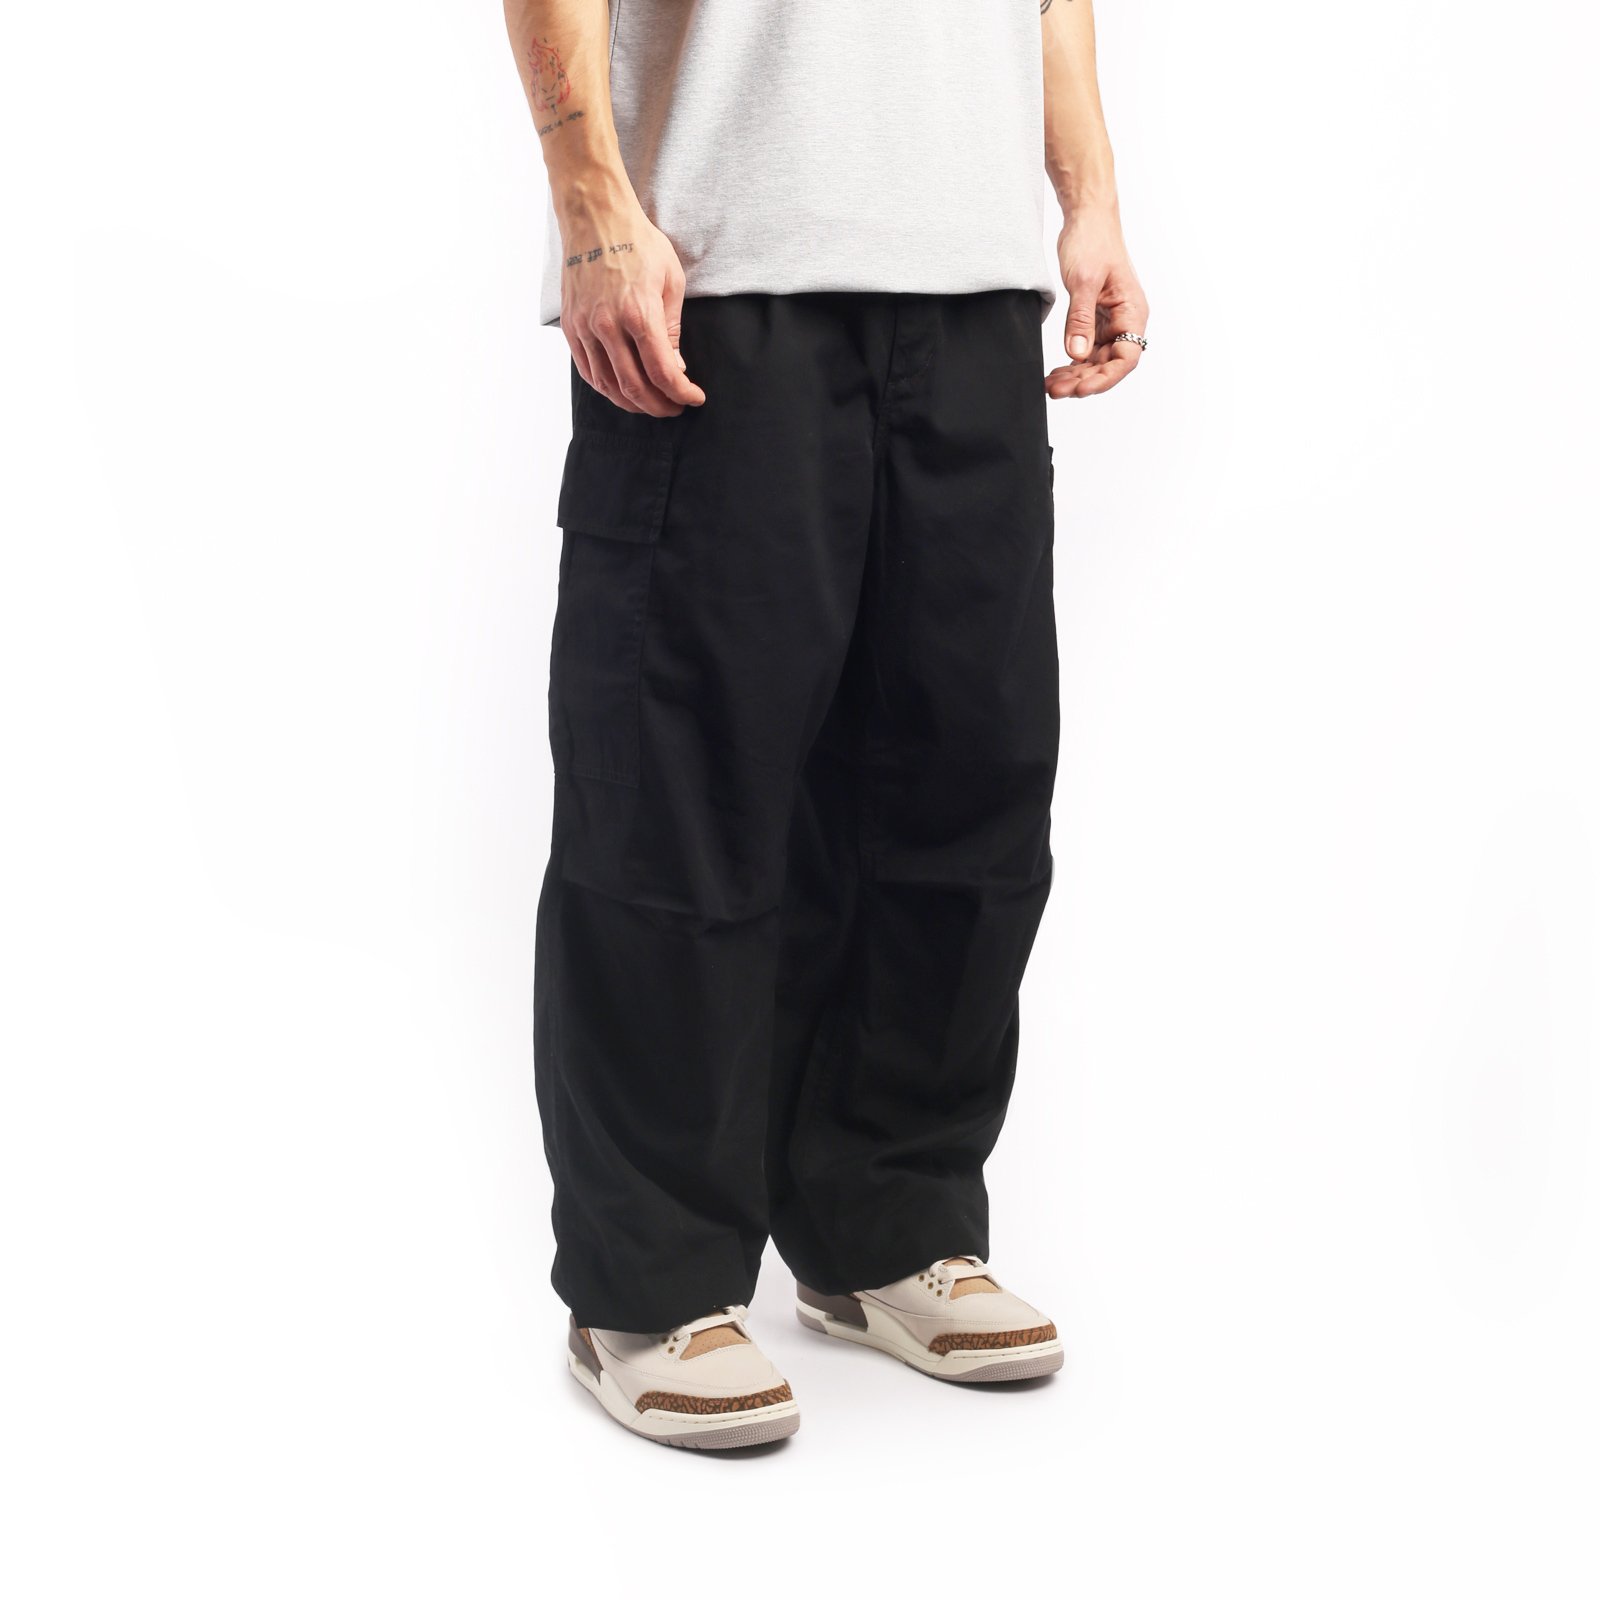 мужские брюки Carhartt WIP Cole Cargo Pant  (I030477-black)  - цена, описание, фото 3